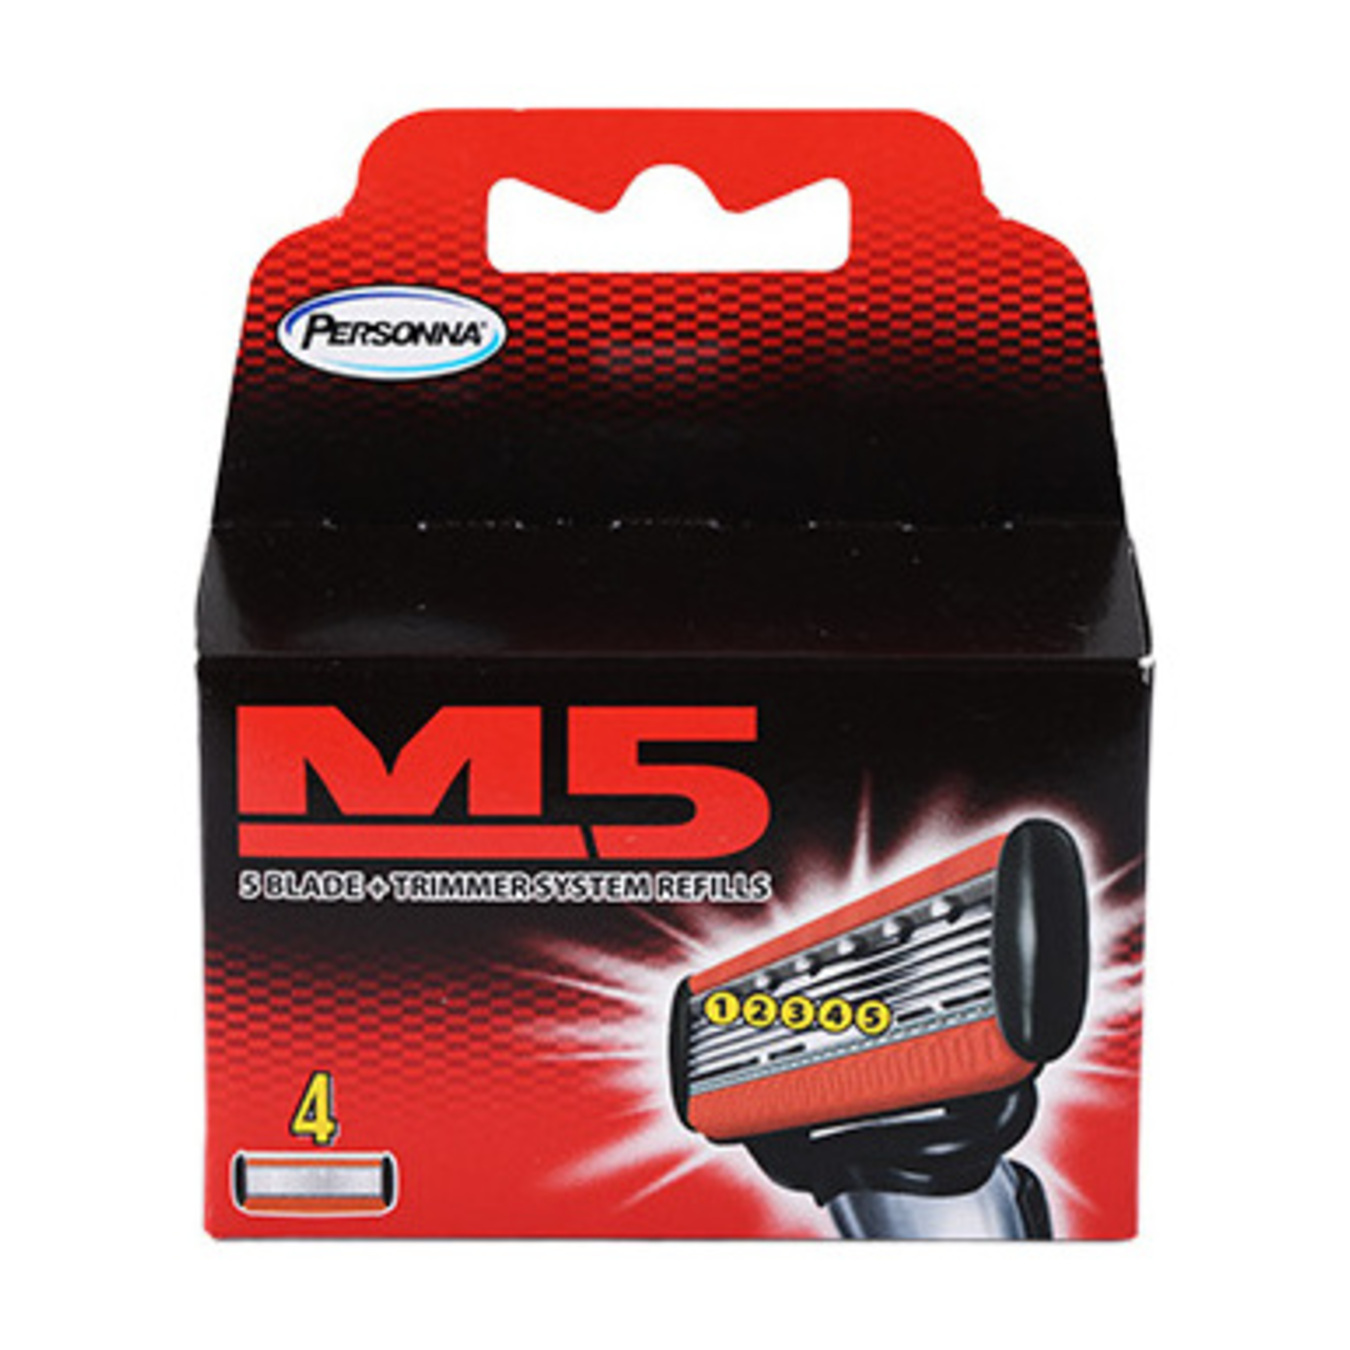 Cartridges Personna M5 Mens interchangeable 4pcs